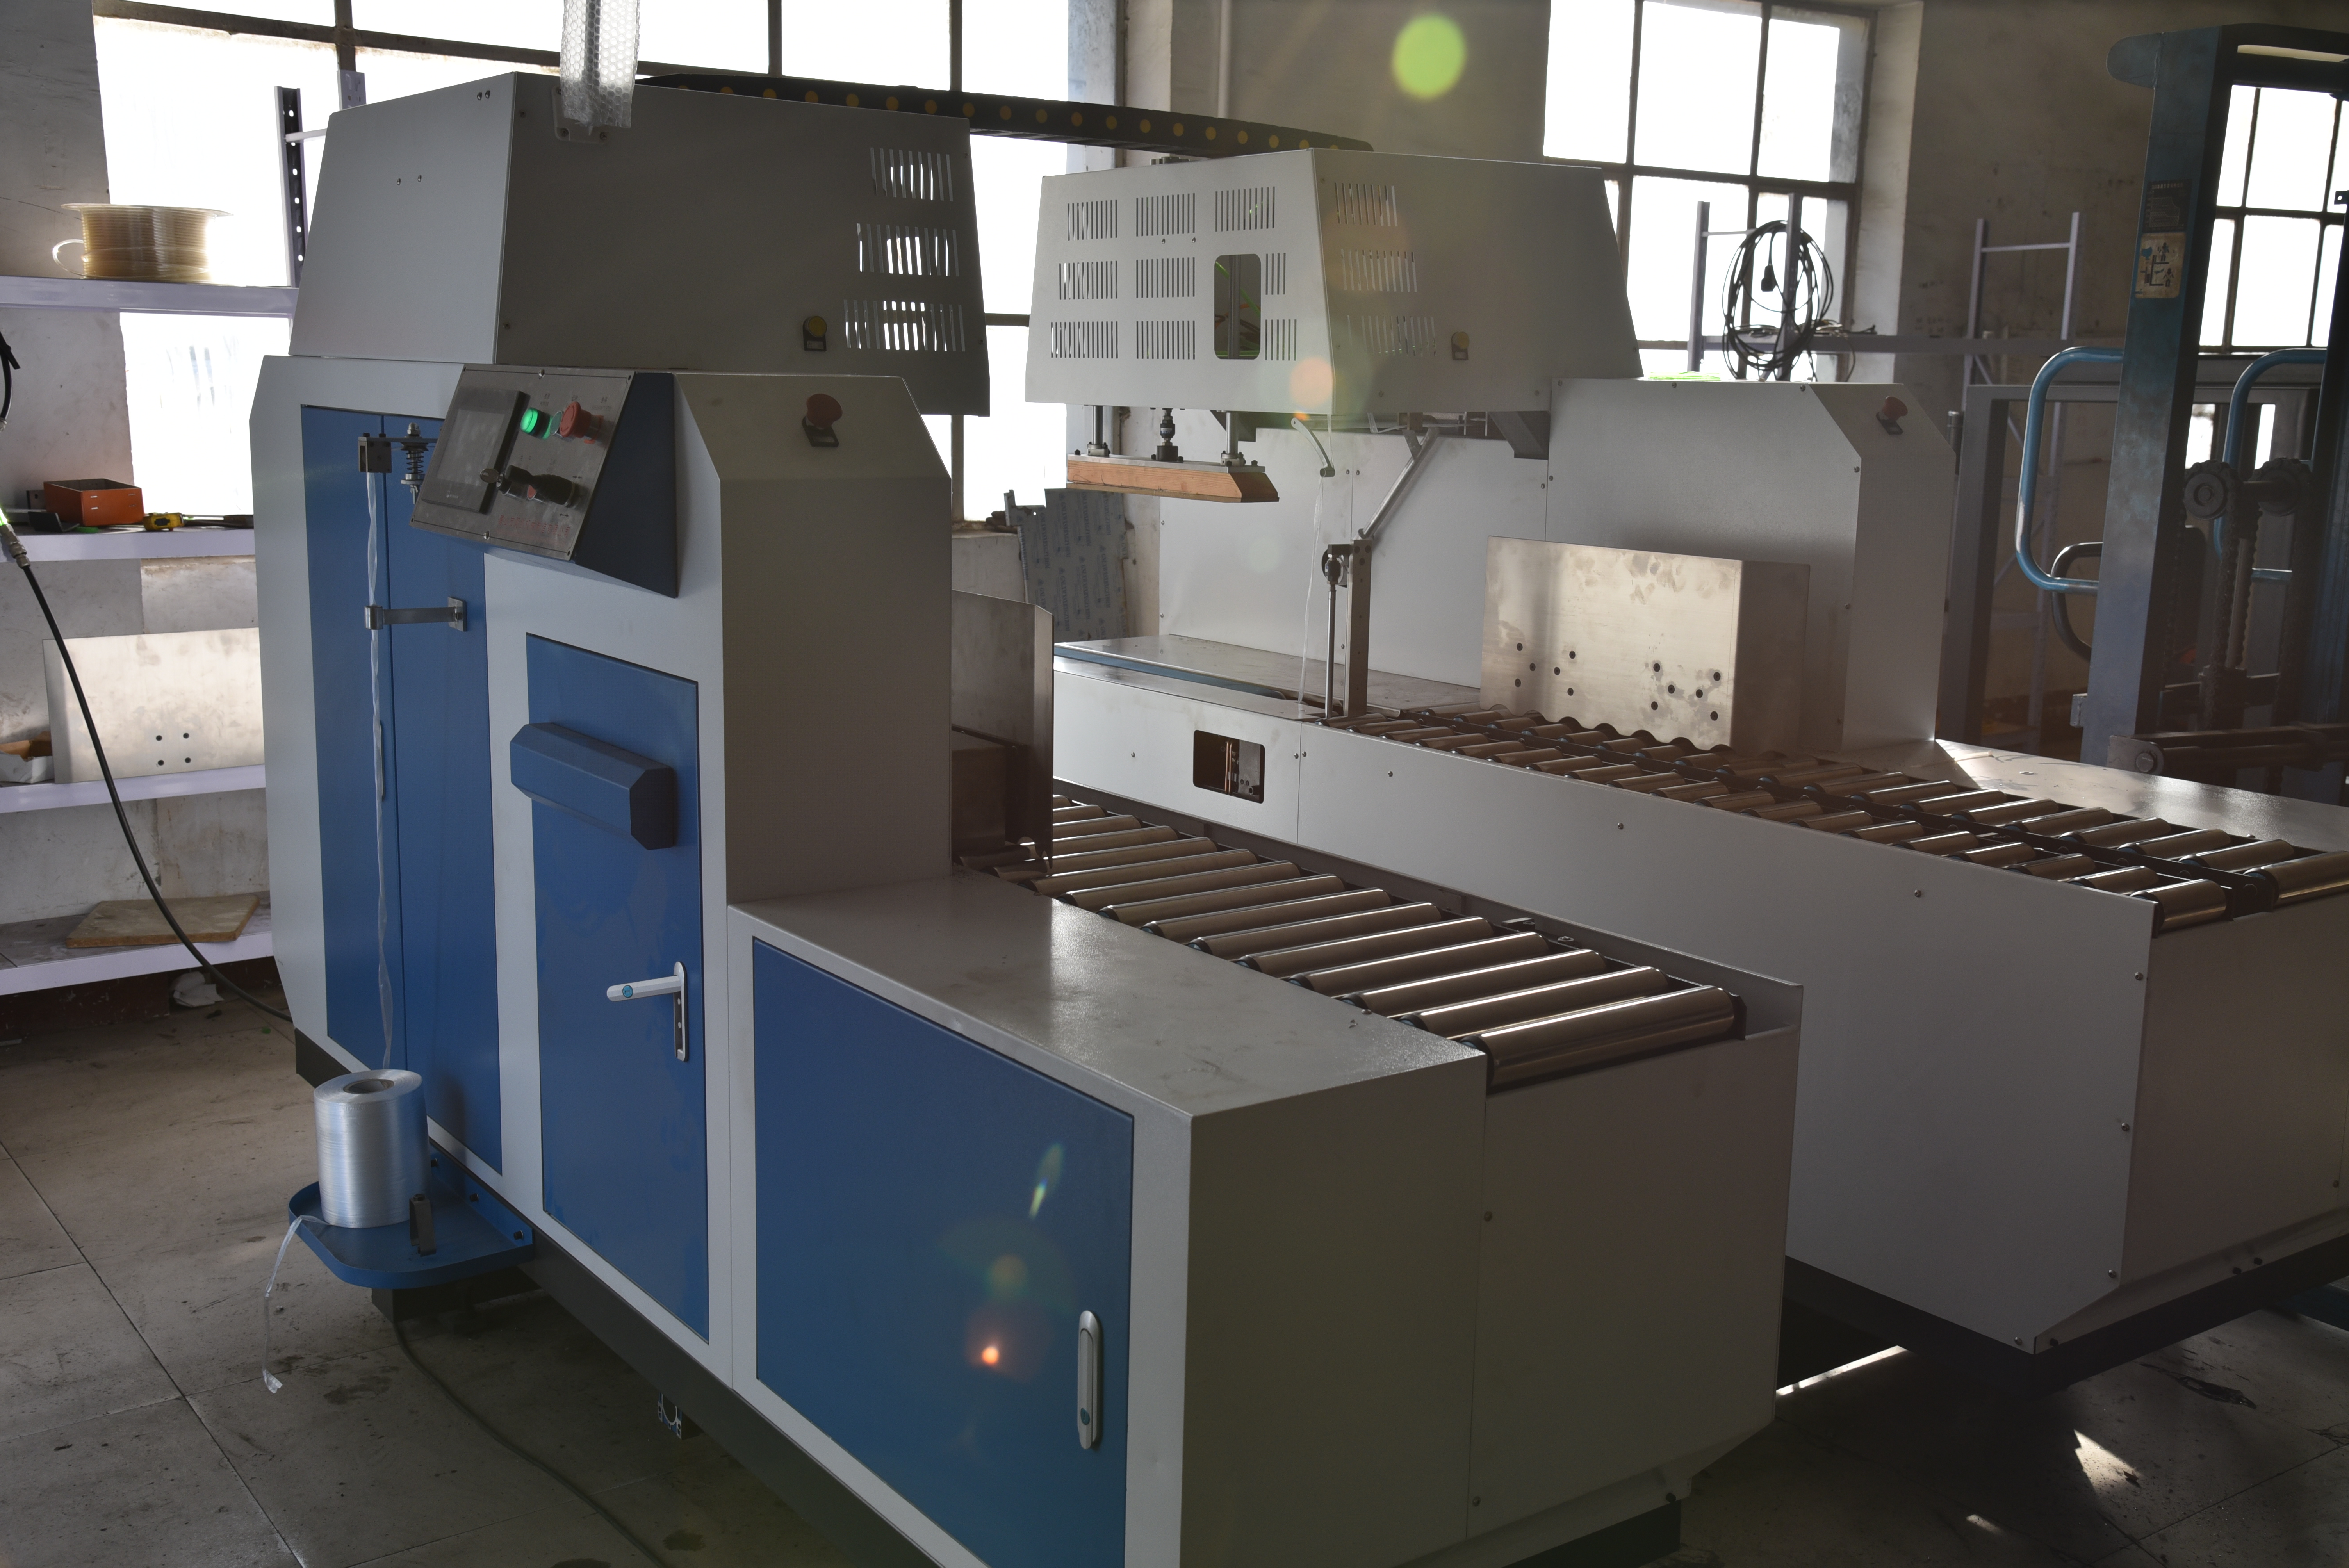 TC-1000B automatic bundling  machine 